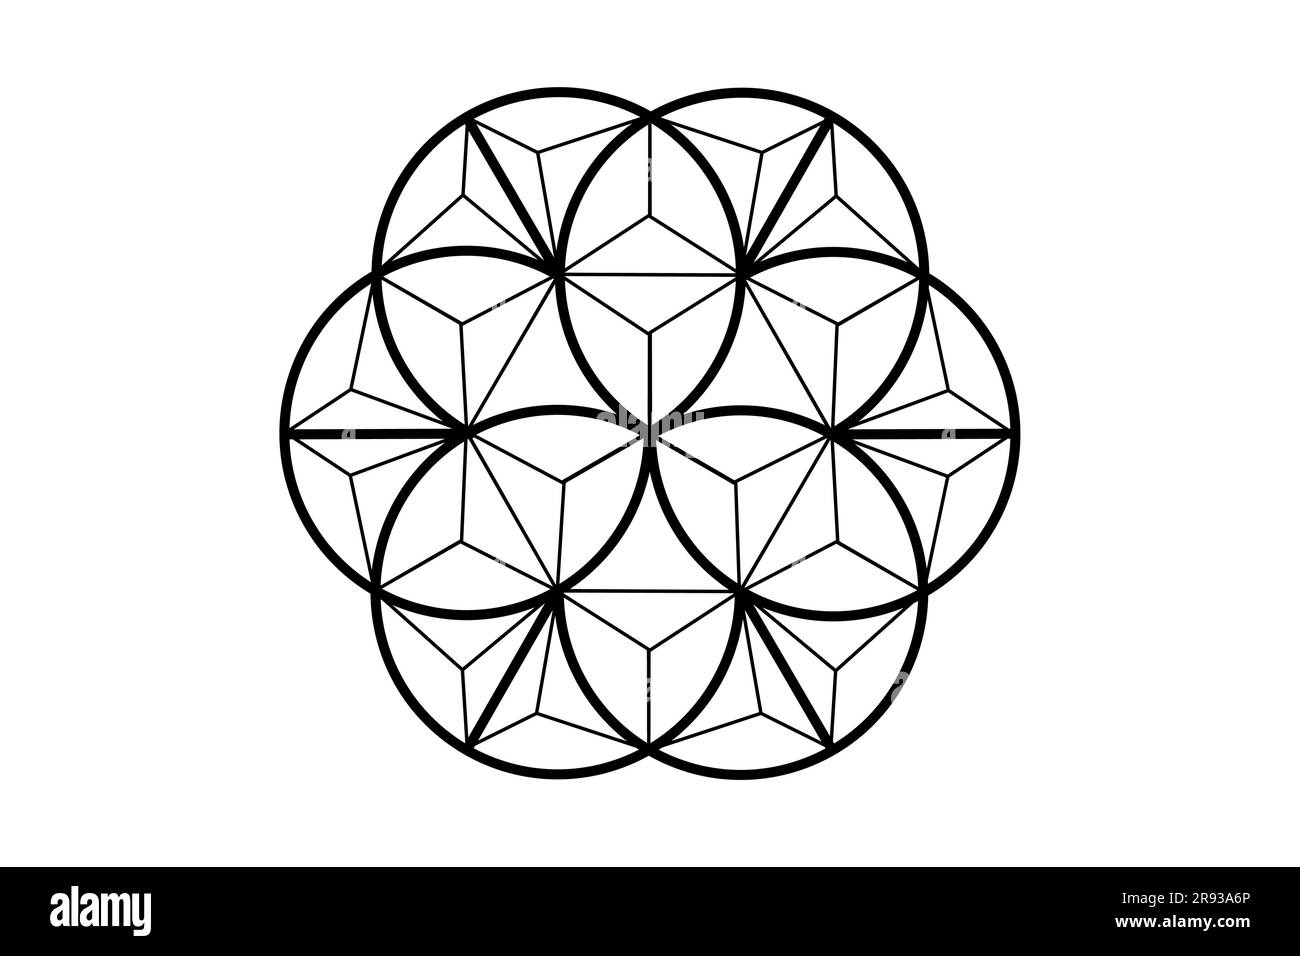 Fiore della vita 3D, geometria sacra. fiore di loto. ornamento mandala con struttura in filo poligonale, simbolo esoterico o spirituale. Logo tatuaggio isolato Illustrazione Vettoriale